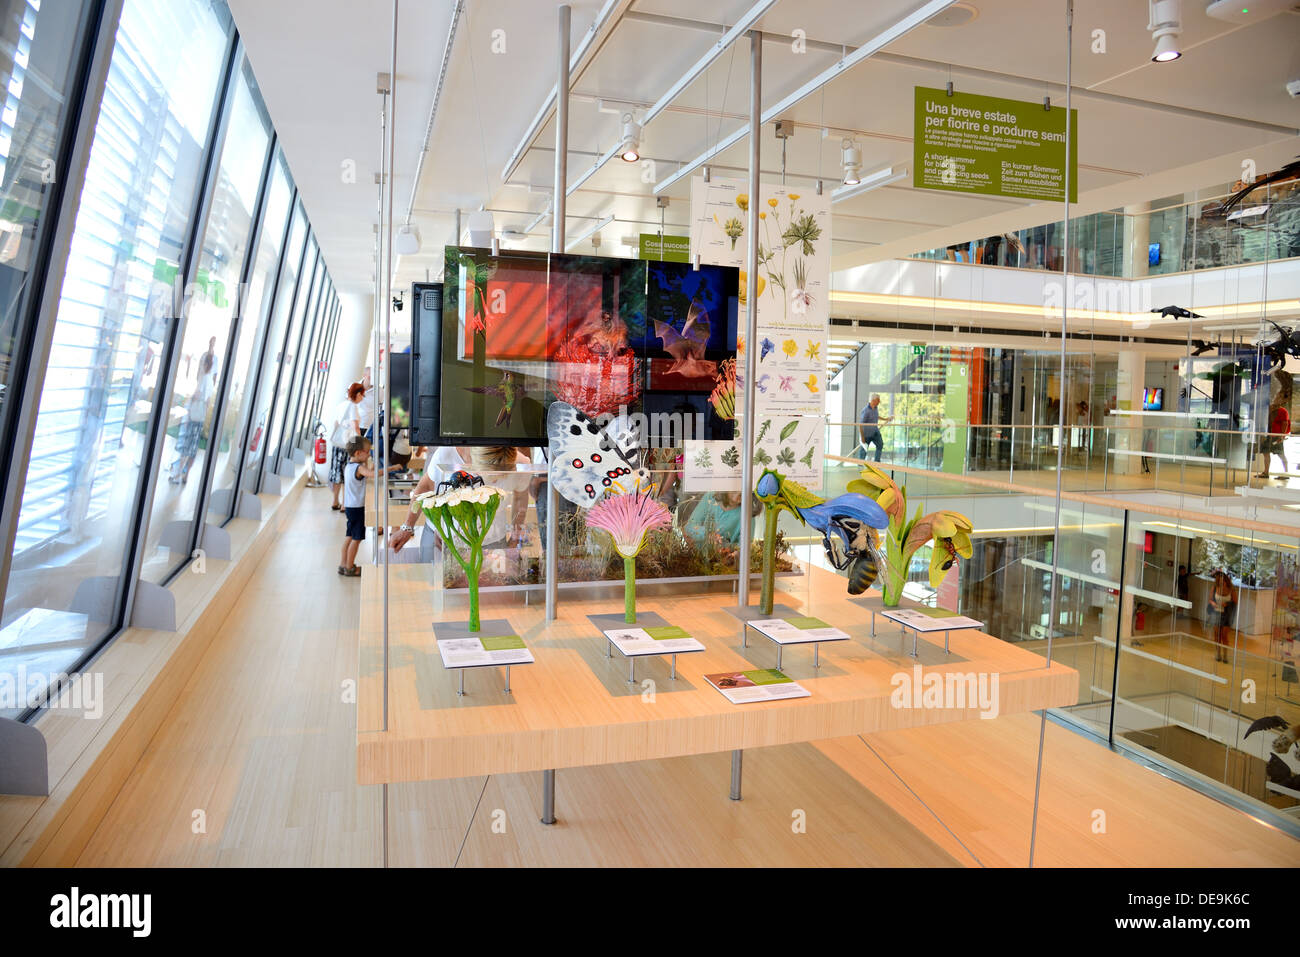 TRENTO, Italien - AUGUST 6: die Muse, interaktives Museum, entworfen vom Architekten Renzo Piano, wurde am 23. Juli 2013 eingeweiht. Stockfoto